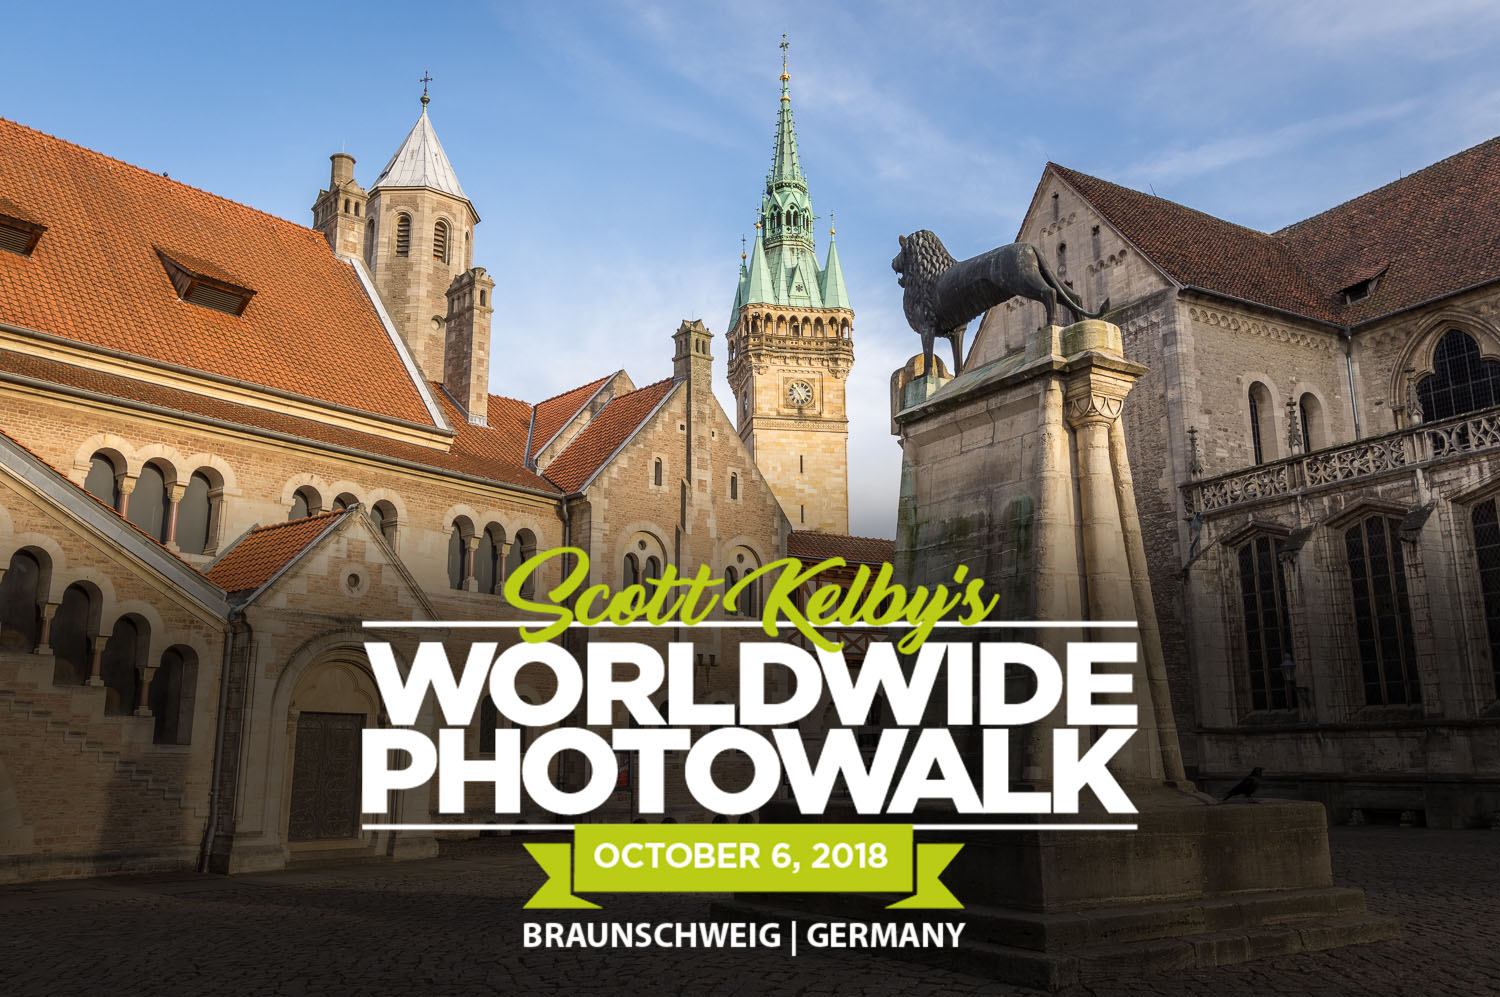 Worldwide Photo Walk 2018 in Braunschweig